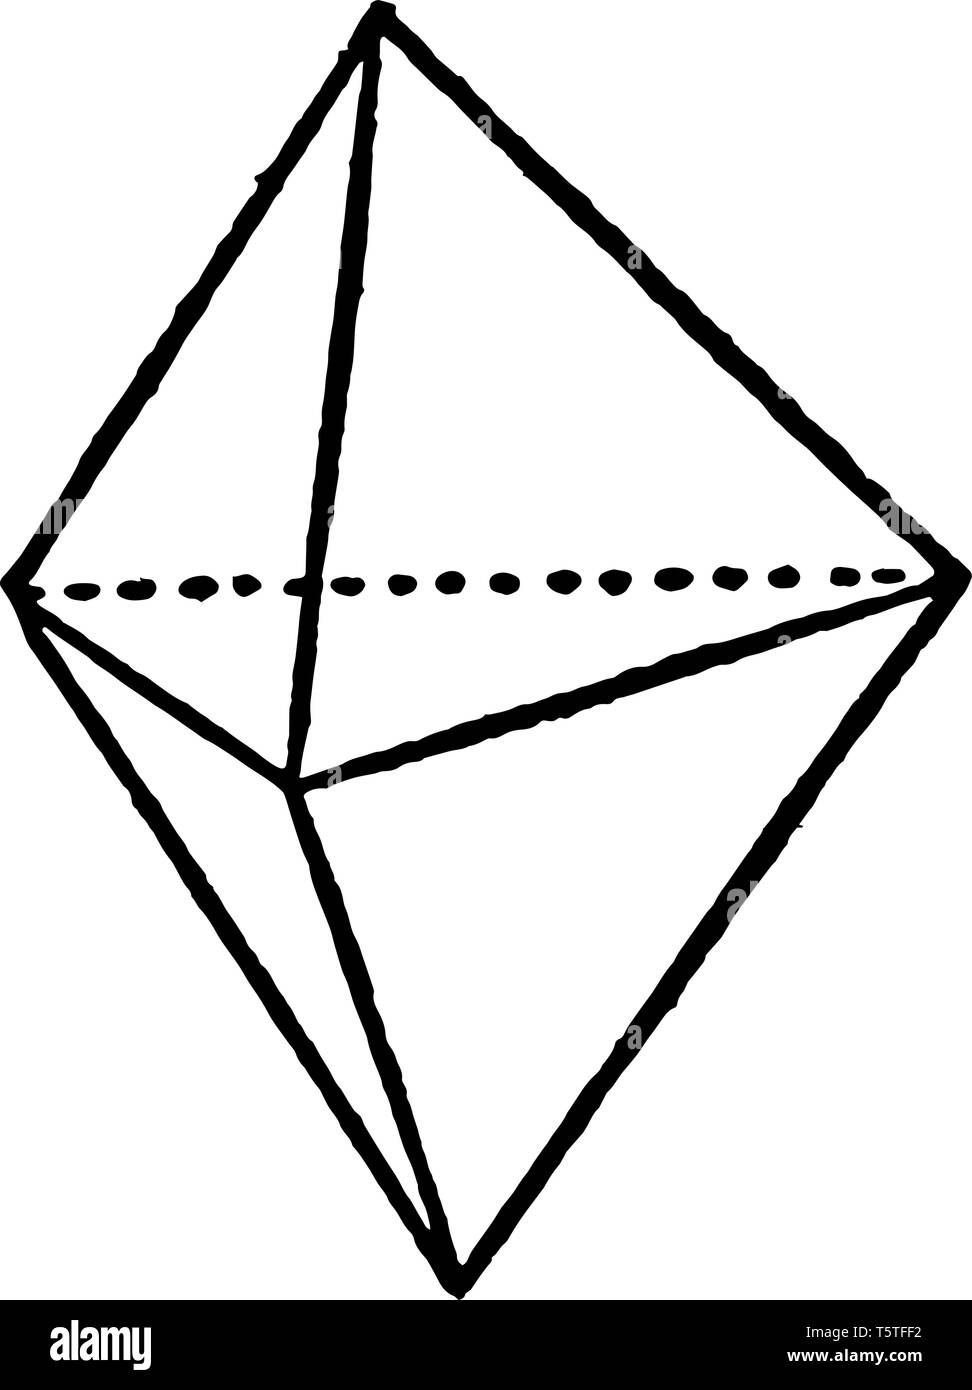 La photo montrant des pyramides triclinique, un système triclinique est décrite dans l'axe de longueur inégale, vintage dessin ou gravure illustration. Illustration de Vecteur